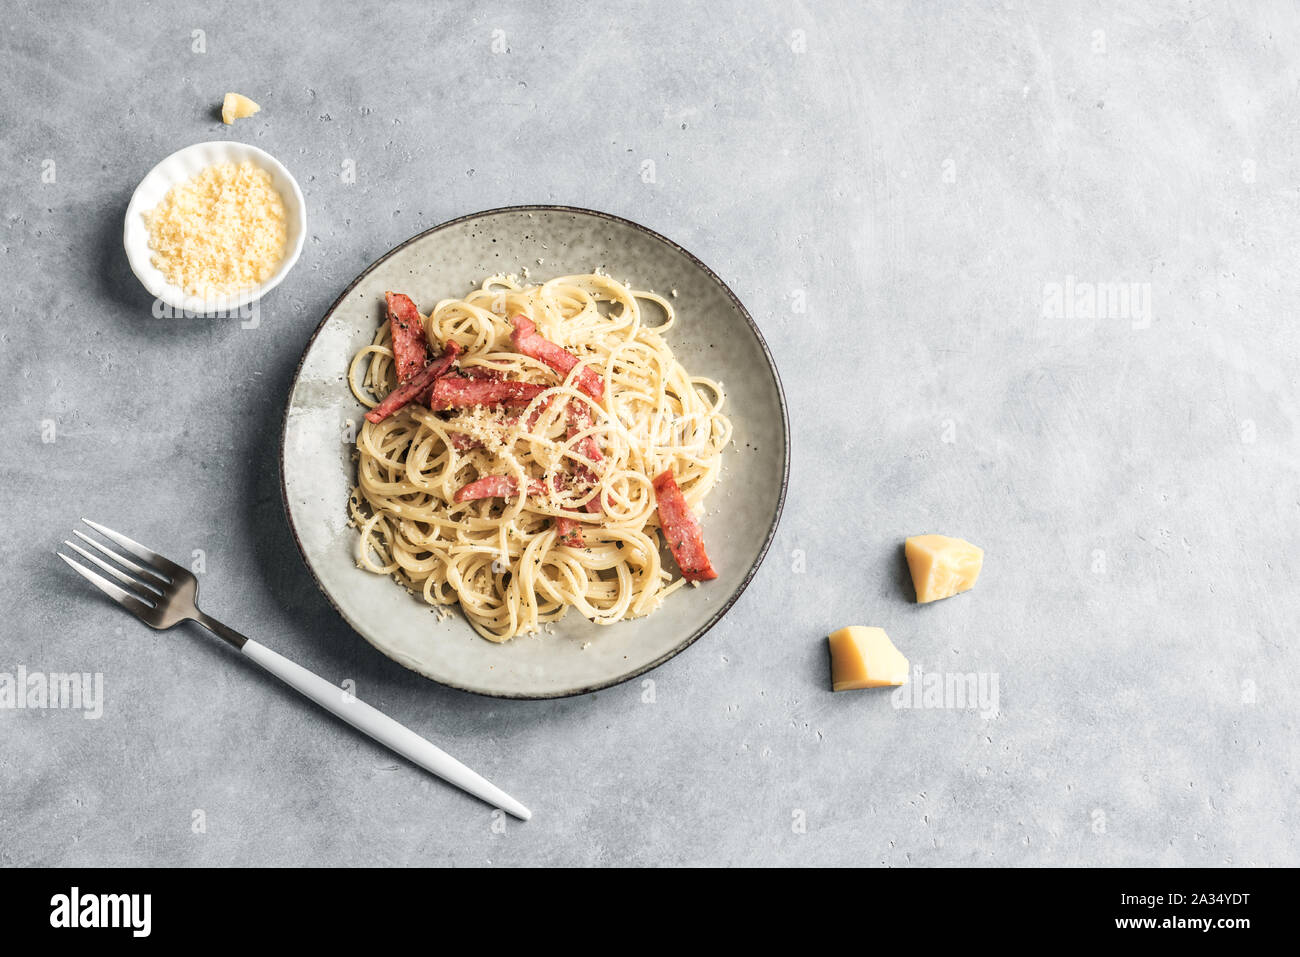 Les pâtes Carbonara, spaghetti avec bacon, oeufs durs, fromage parmesan et sauce à la crème. La cuisine traditionnelle italienne. Pasta alla carbonara, vue du dessus, copiez sp Banque D'Images